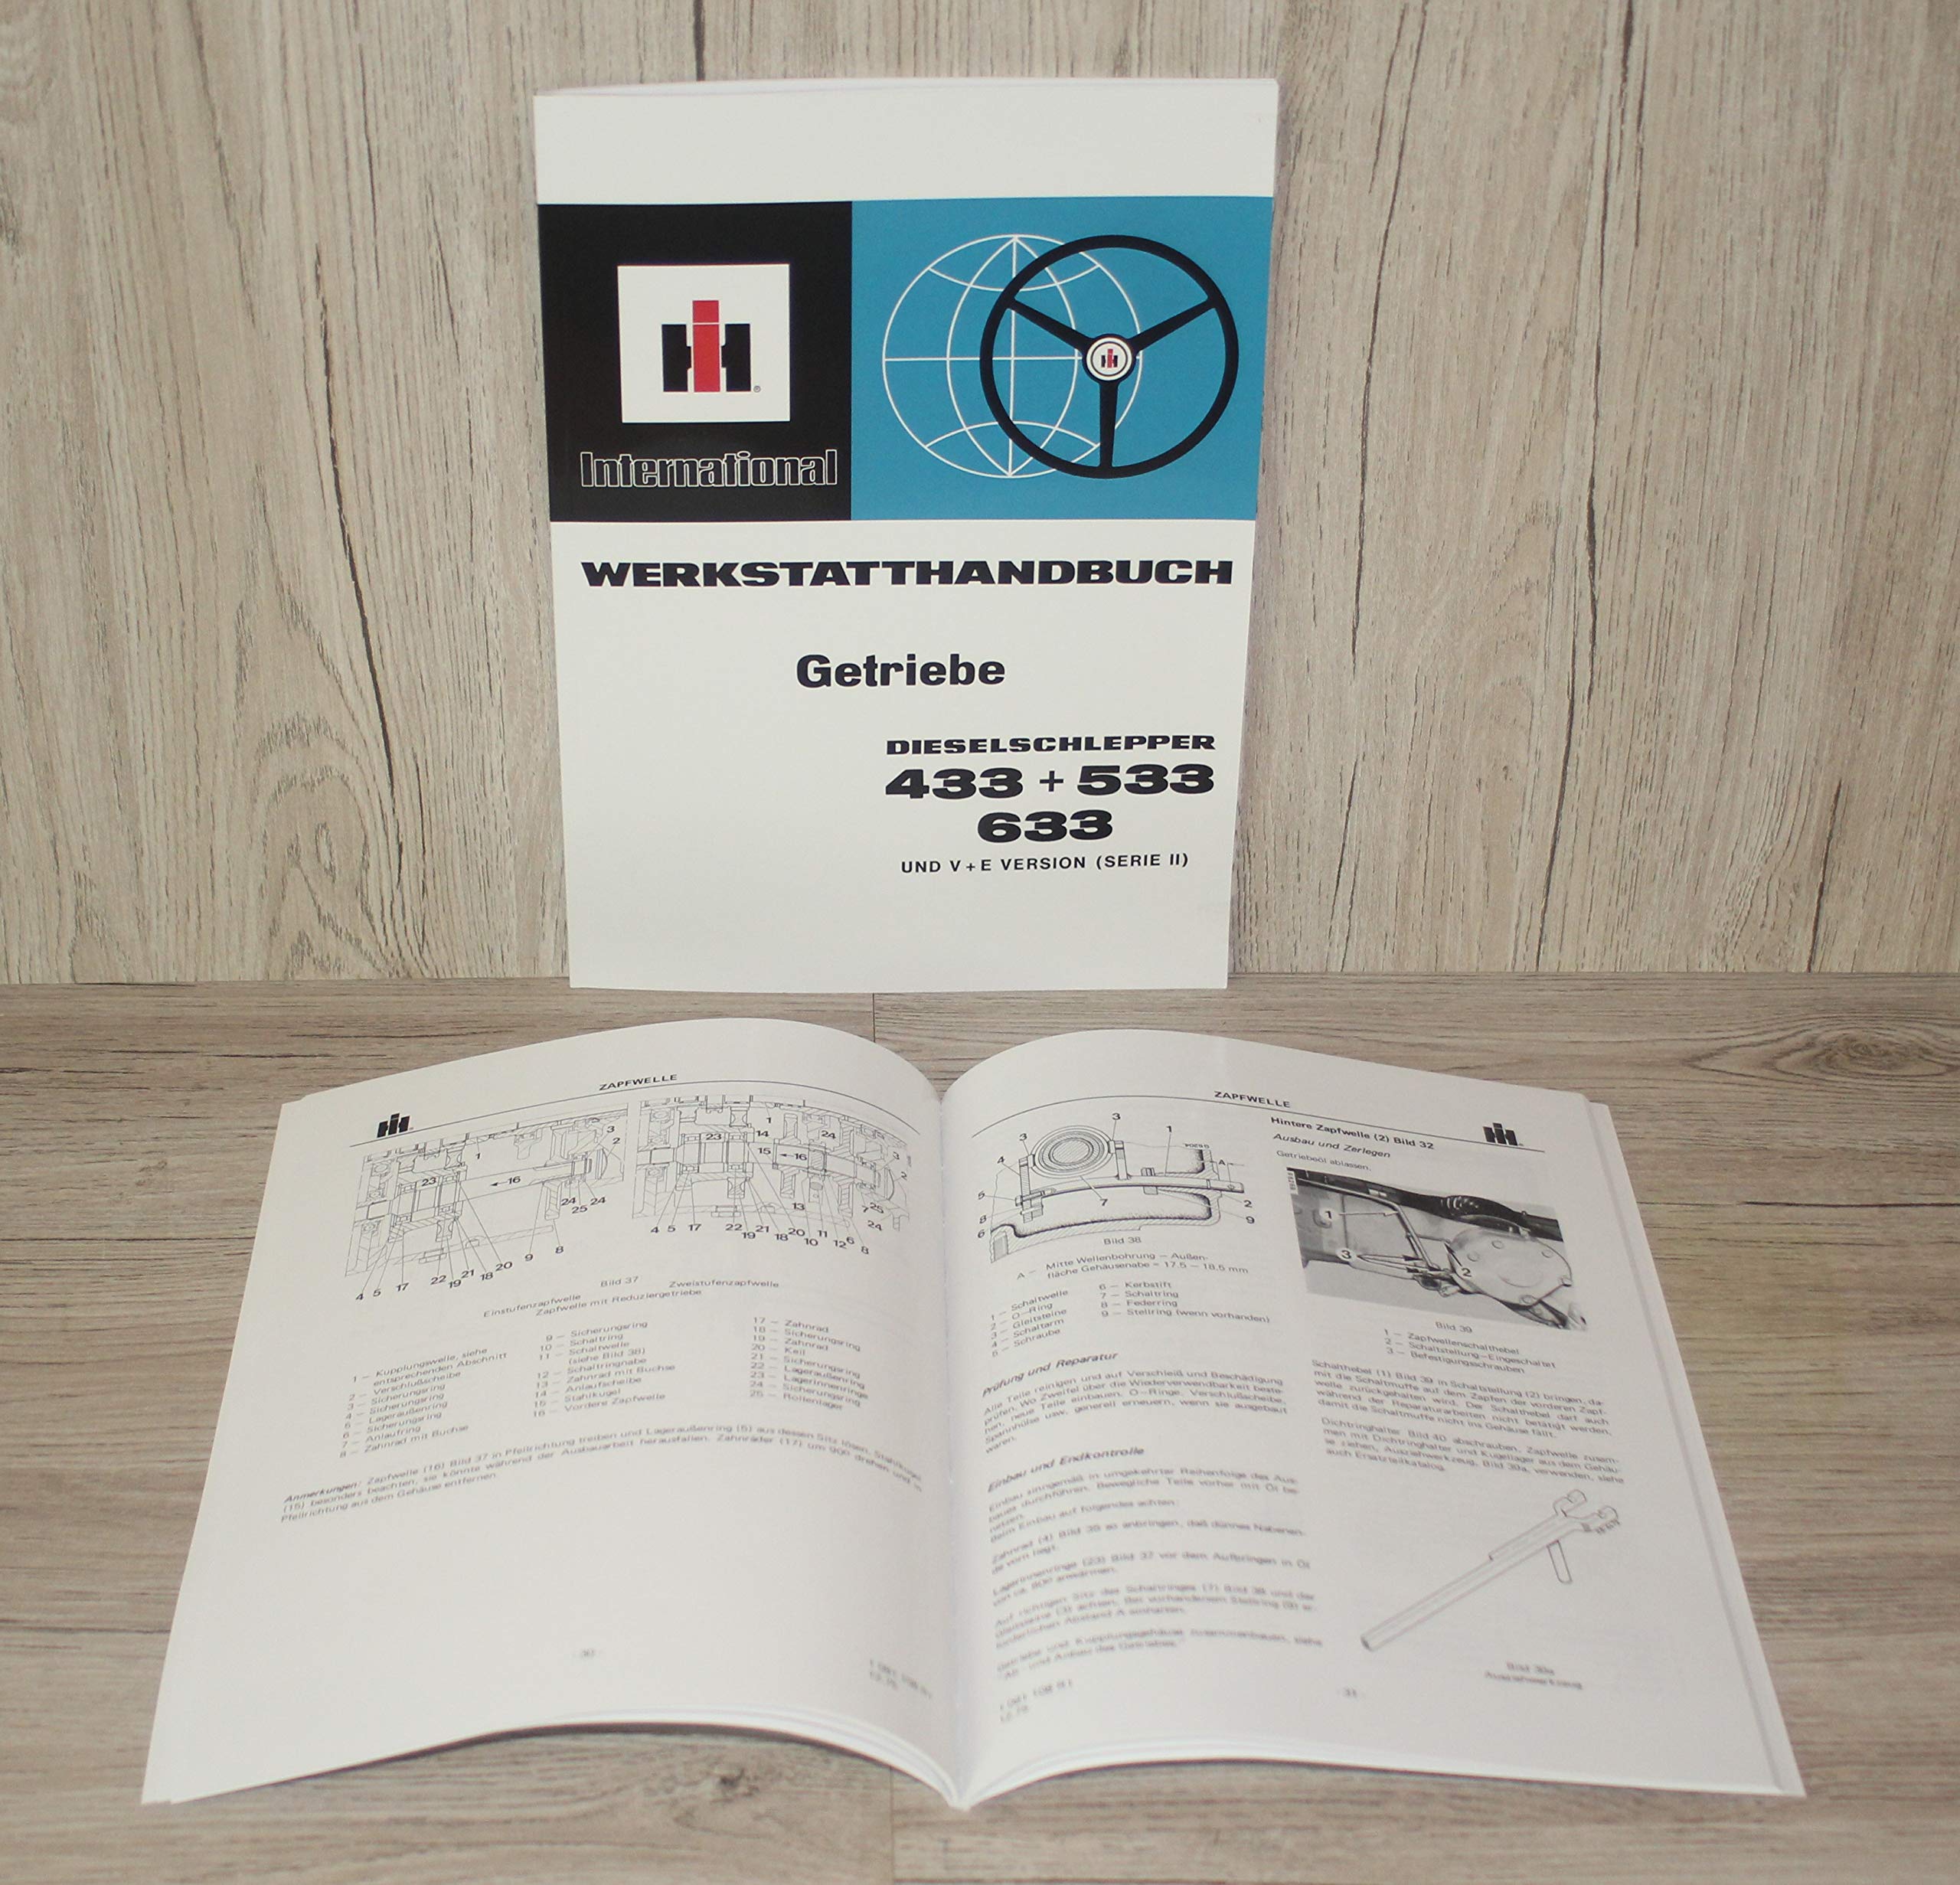 IHC Werkstatthandbuch Getriebe Traktor 433 533 633 und V + E Version (Serie II)